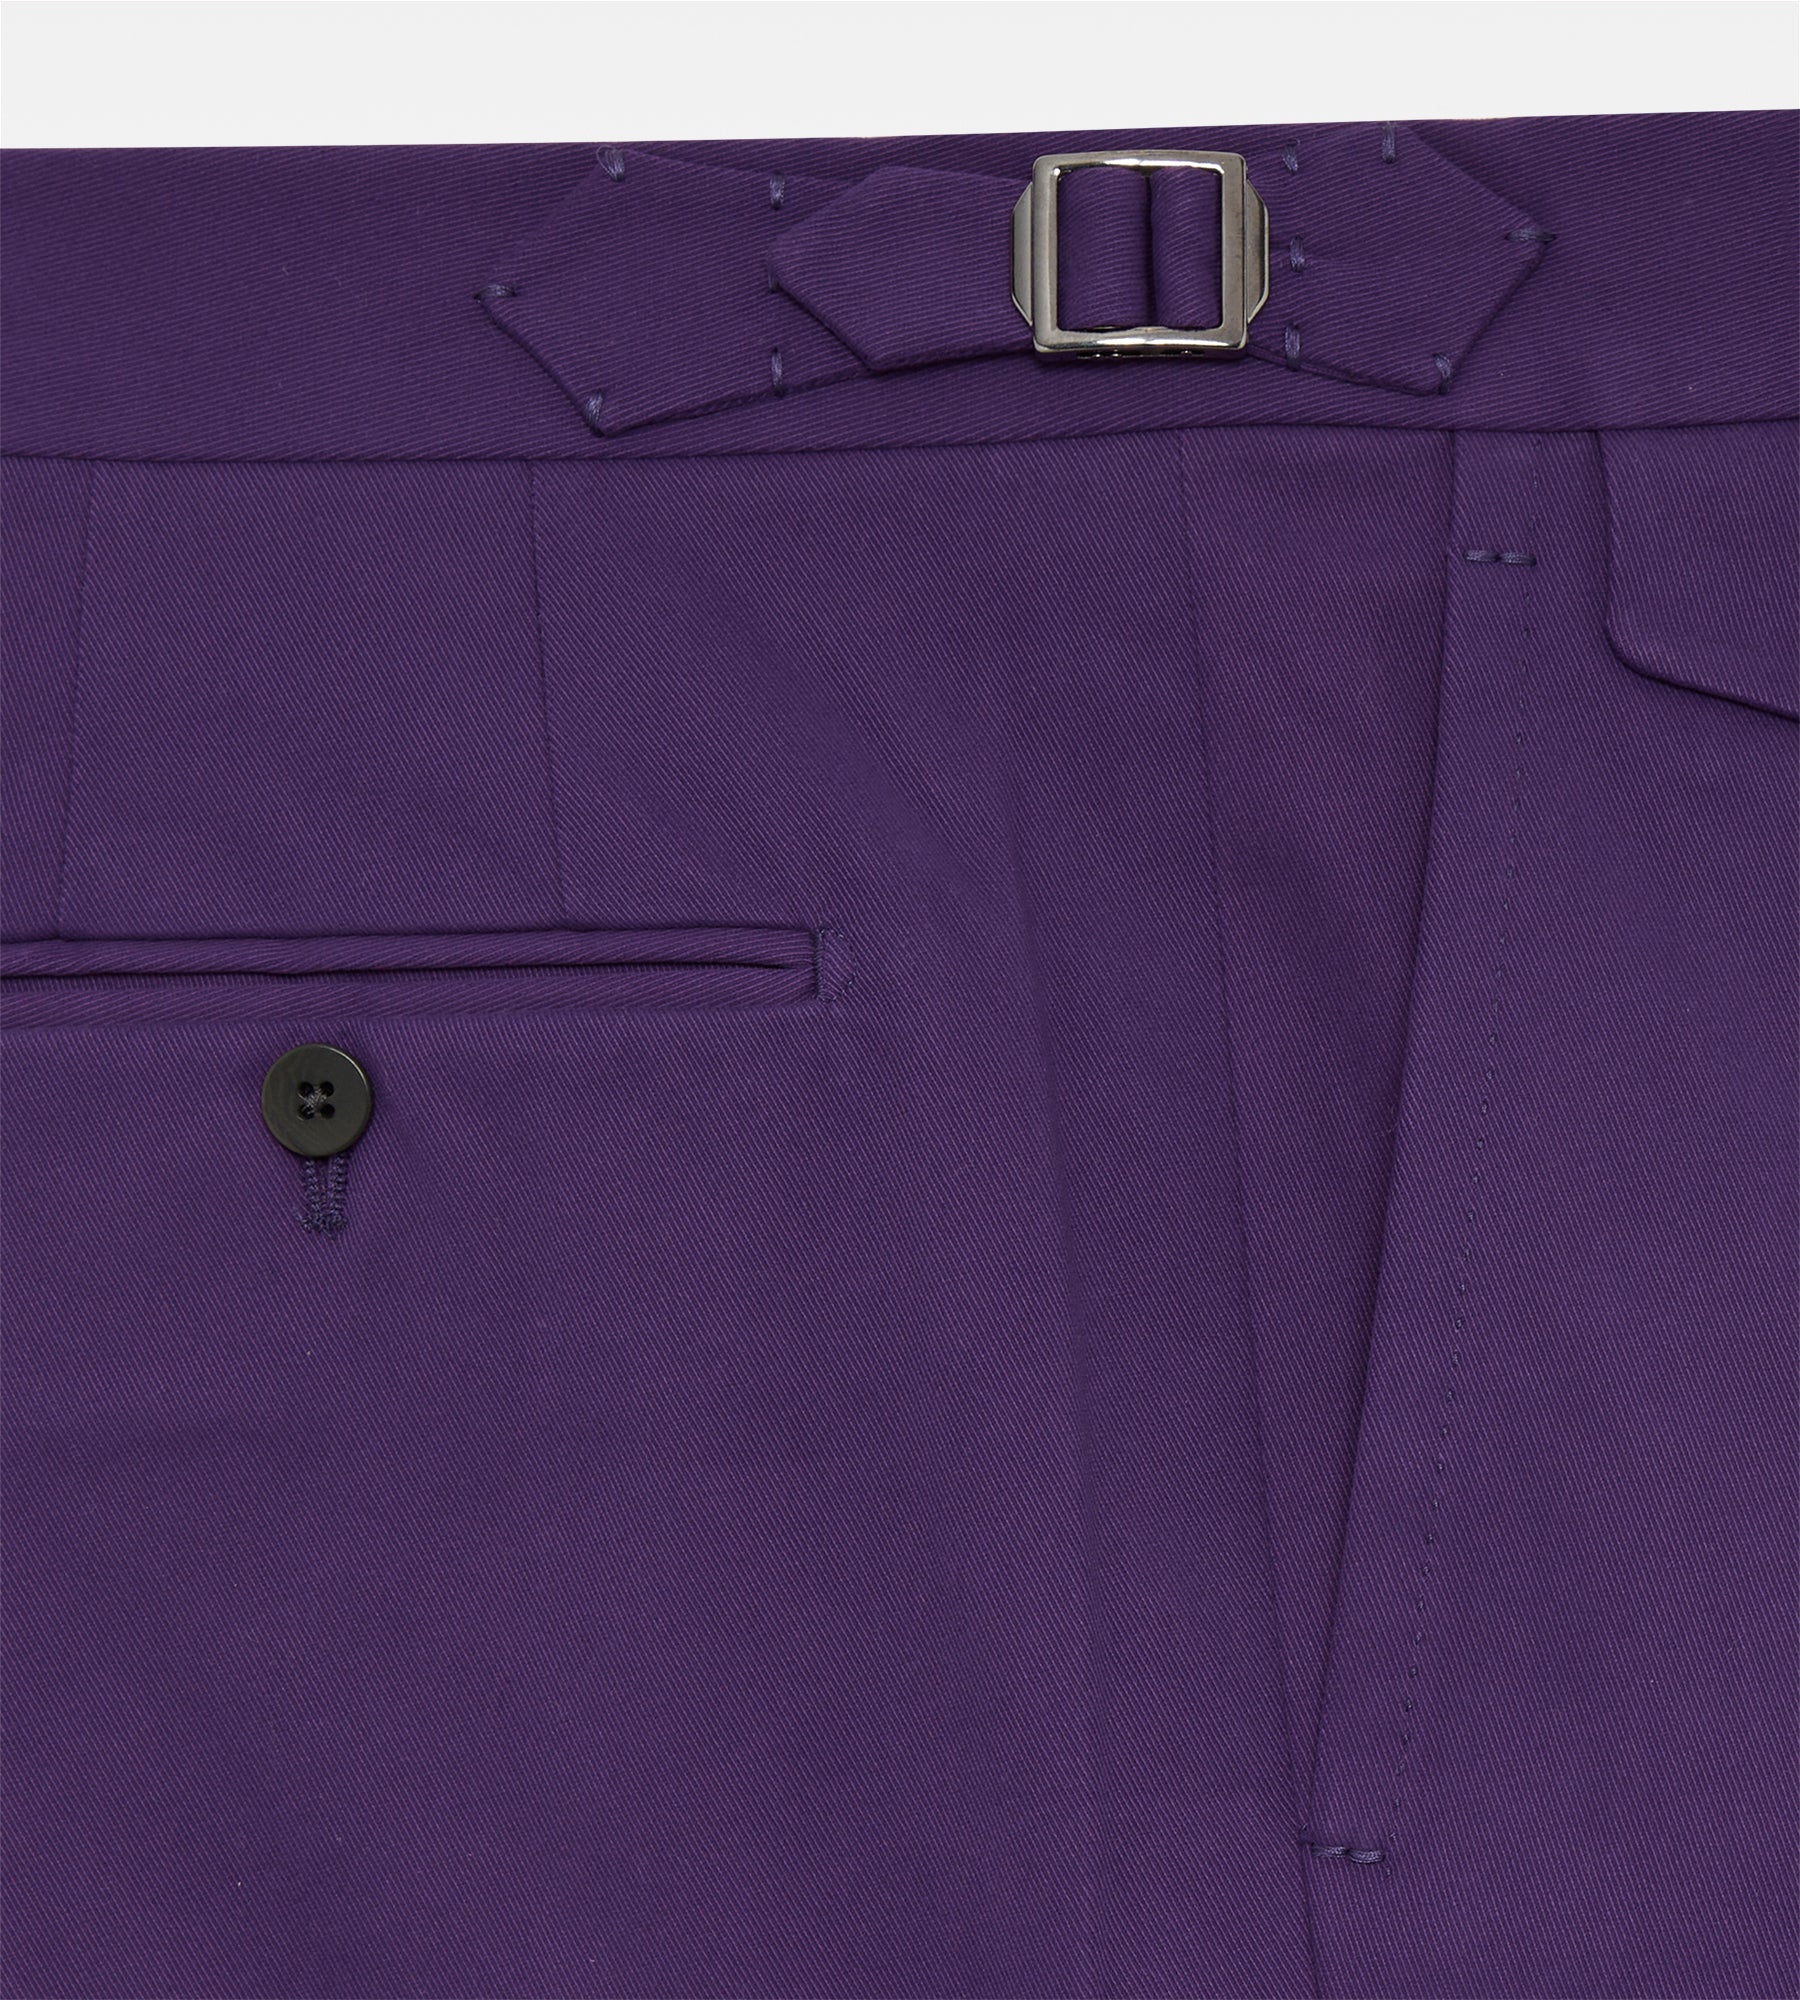 Pantalon en coton violet